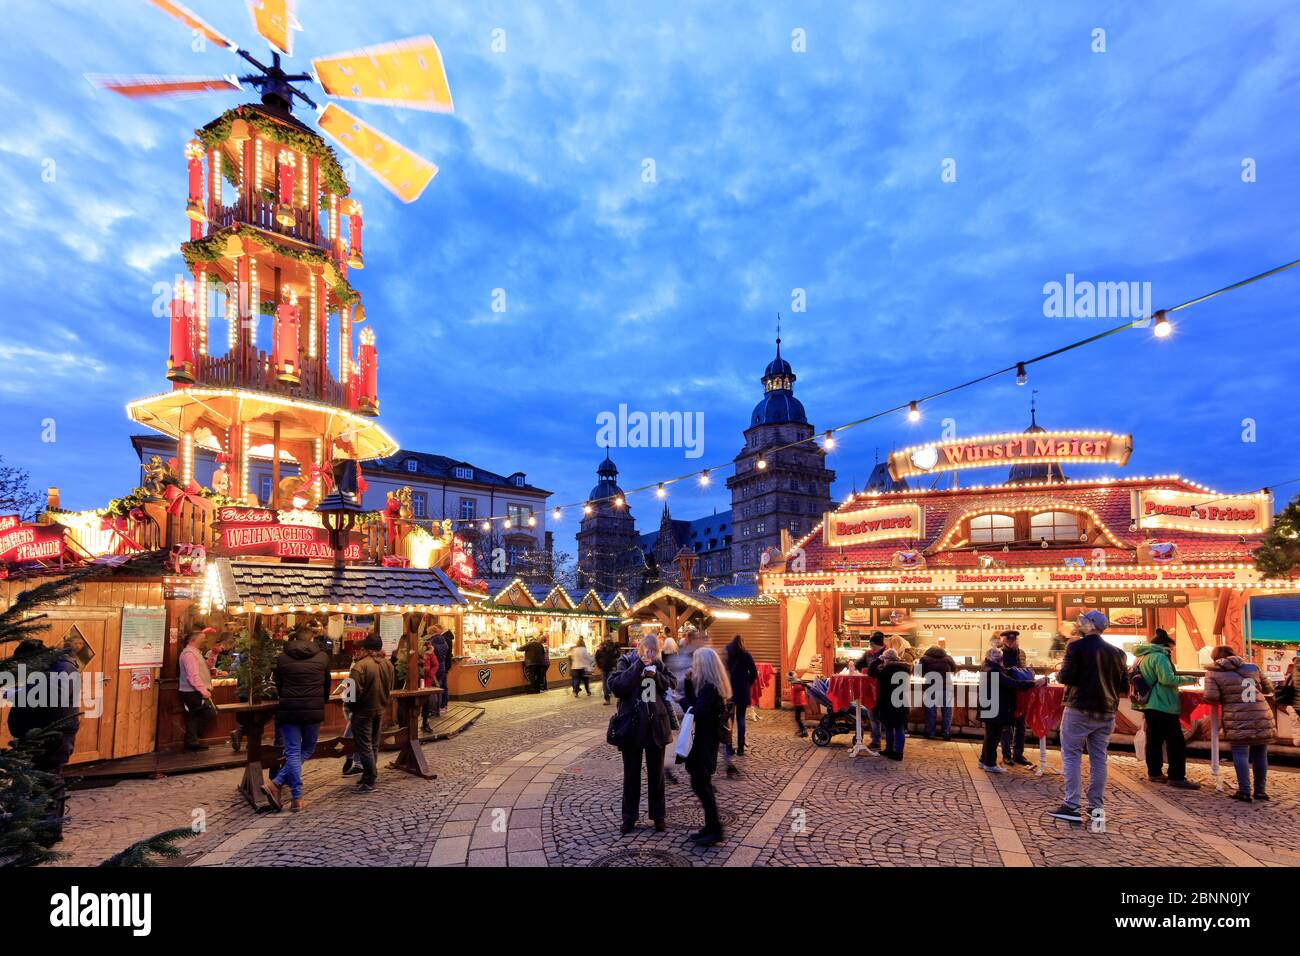 Mercatino di Natale, Schlossplatz, Castello di Johannisburg, ora blu, tramonto, decorazione natalizia, Aschaffenburg, Franconia, Baviera, Germania, Europa Foto Stock